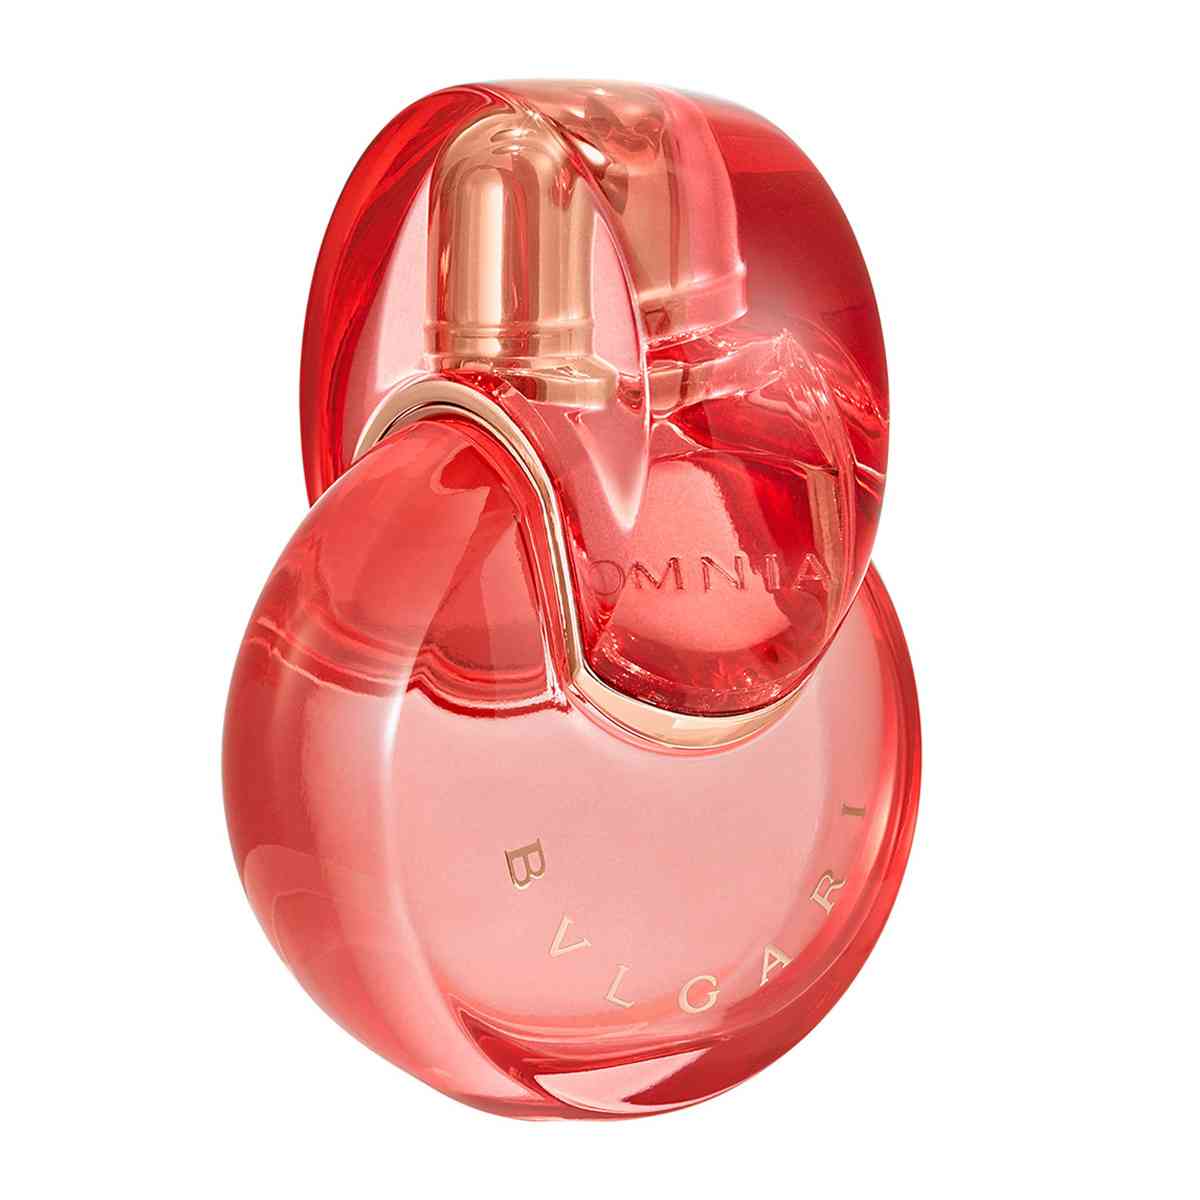 Perfume CH Good Girl Carolina Herrera Edp Feminino 30ml - Dlumian